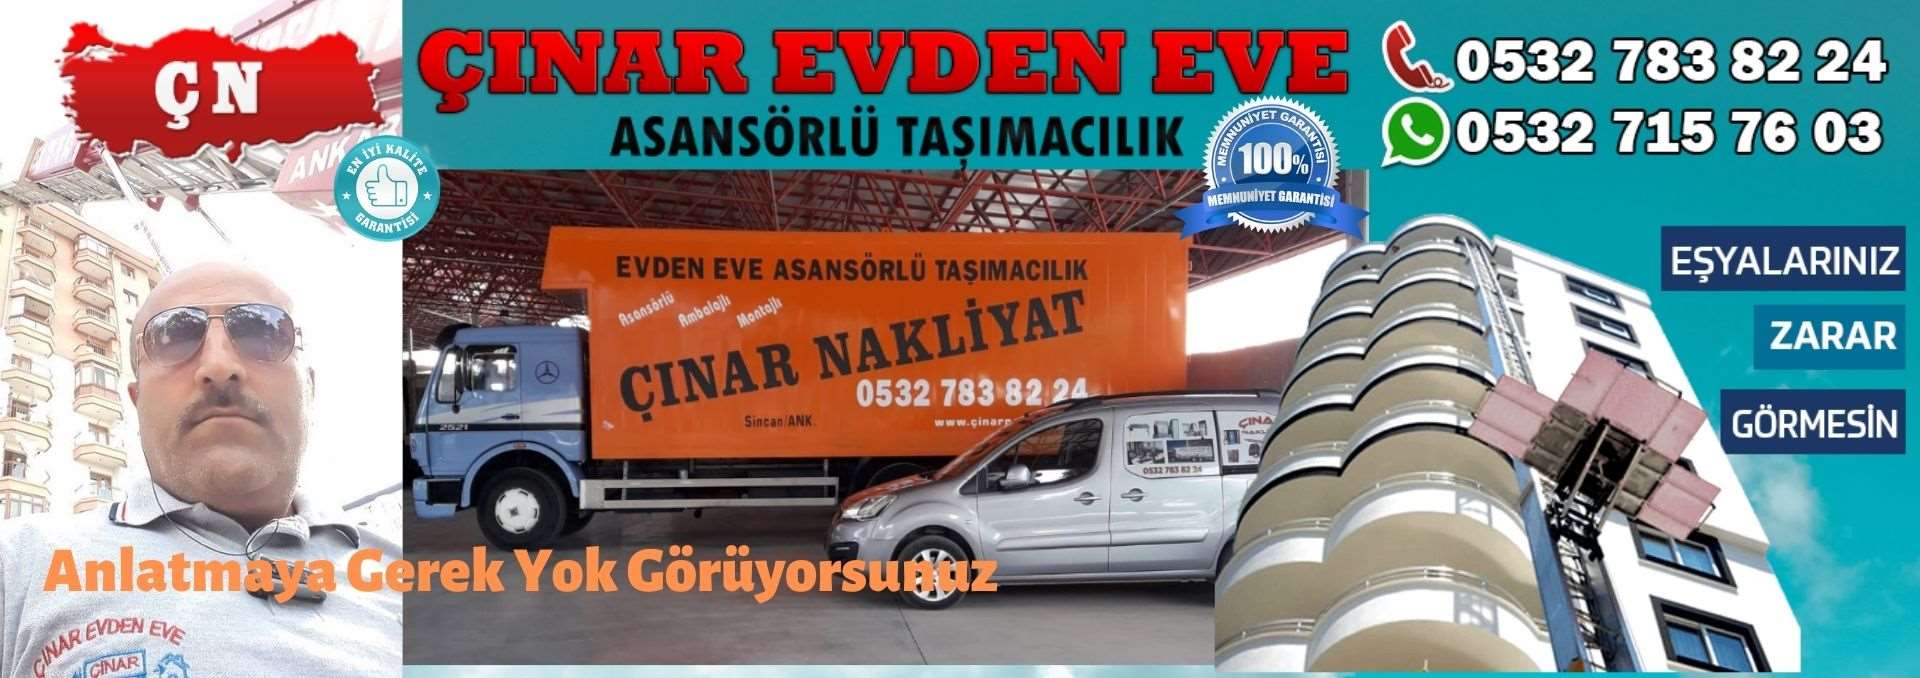 Ankara Kazan Evden Eve Asansörlü Ev Eşyası Taşıma 0532 715 76 03